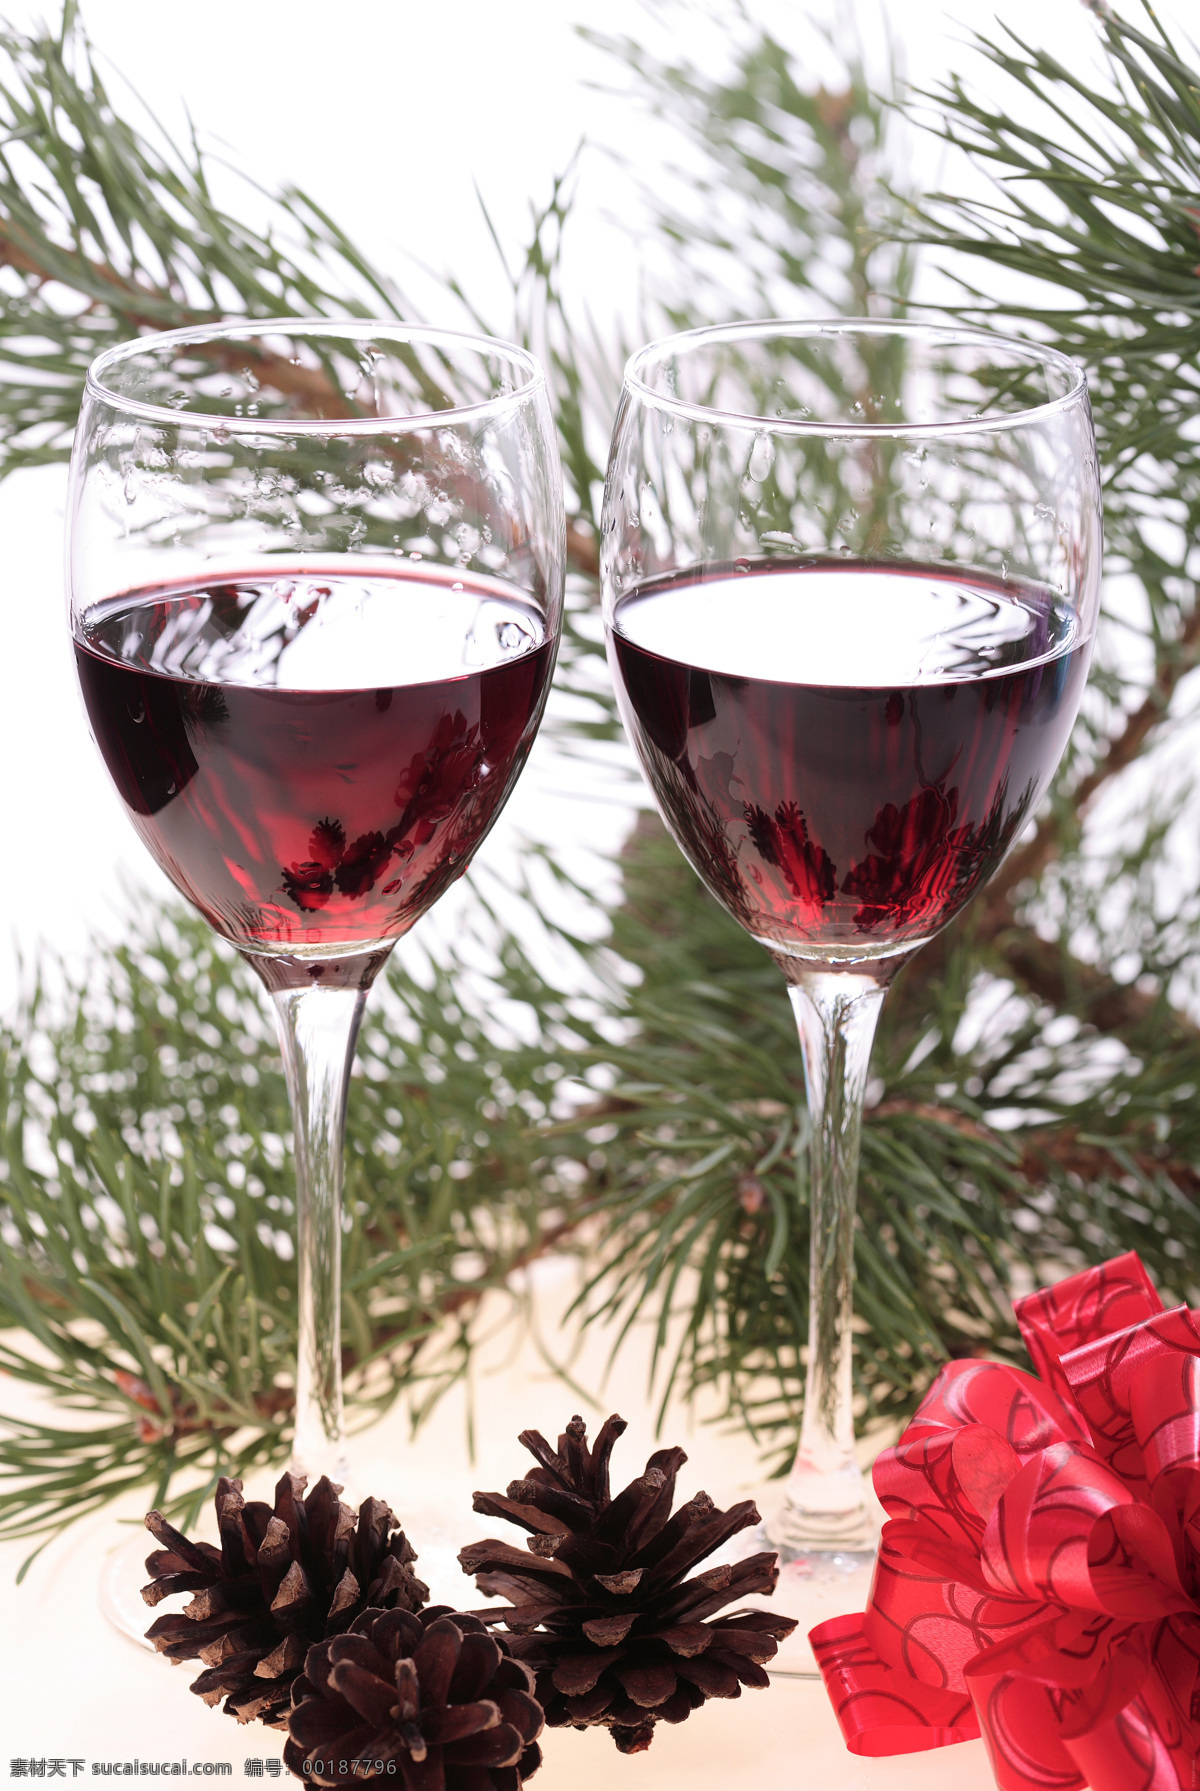 圣诞 两 杯 红酒 葡萄酒 餐饮美食 高脚杯 酒杯 圣诞节日 饮料酒水 盛葡萄酒 节日美酒 psd源文件